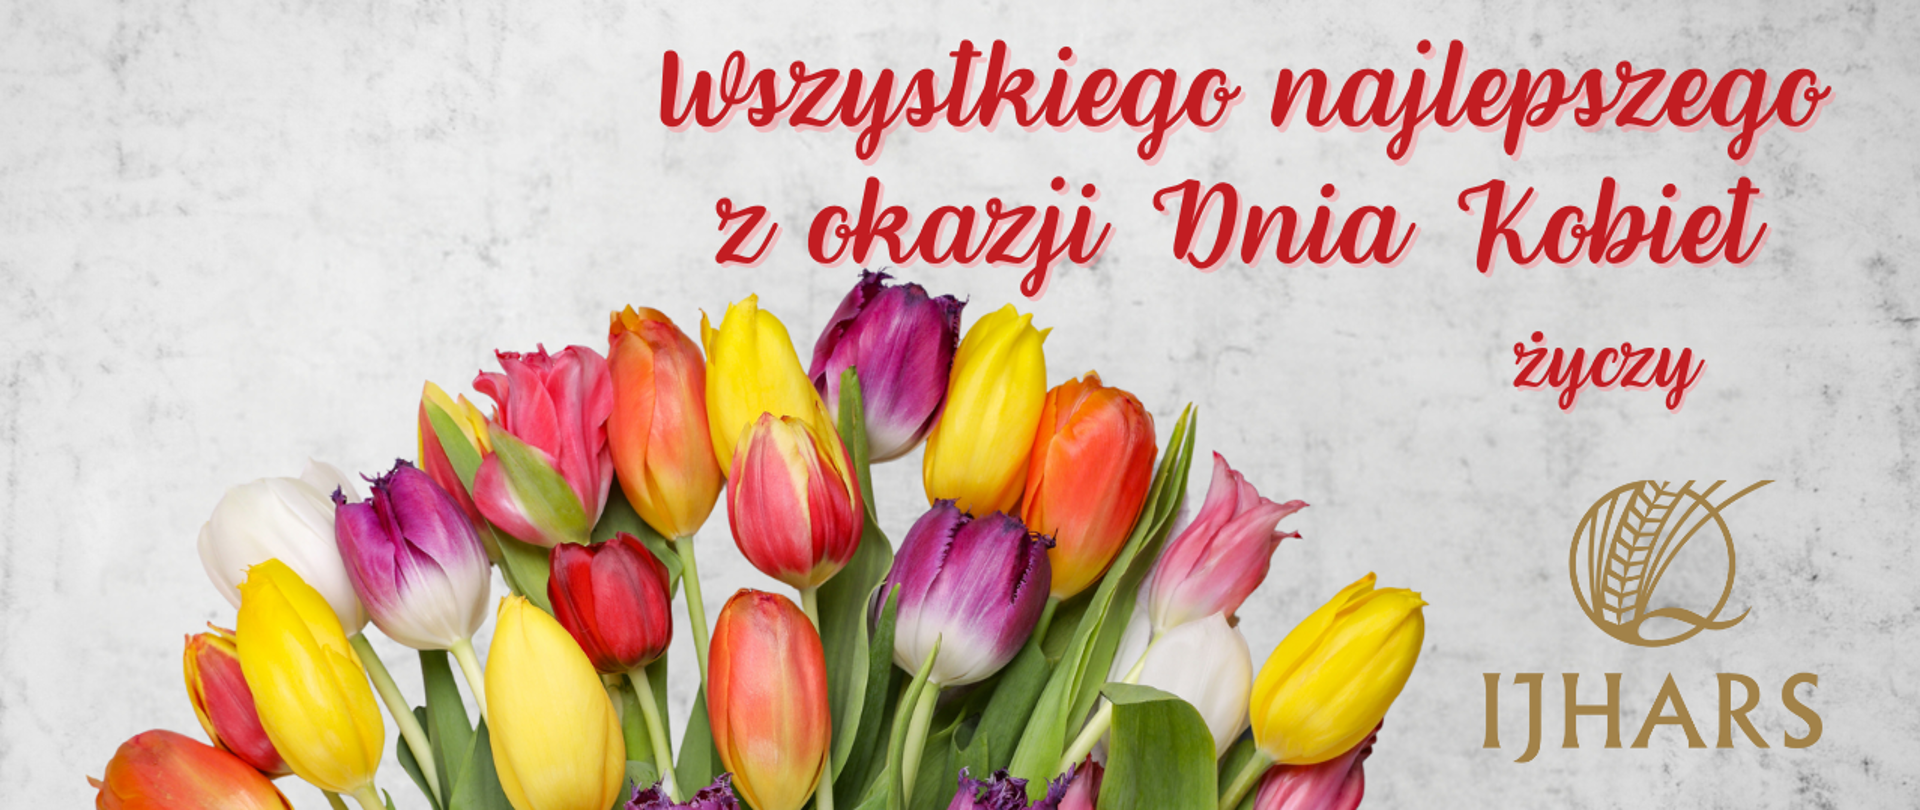 bukiet tulipanów i nad nim napis: Wszystkiego najlepszego z okazji Dnia Kobiet życzy IJHARS